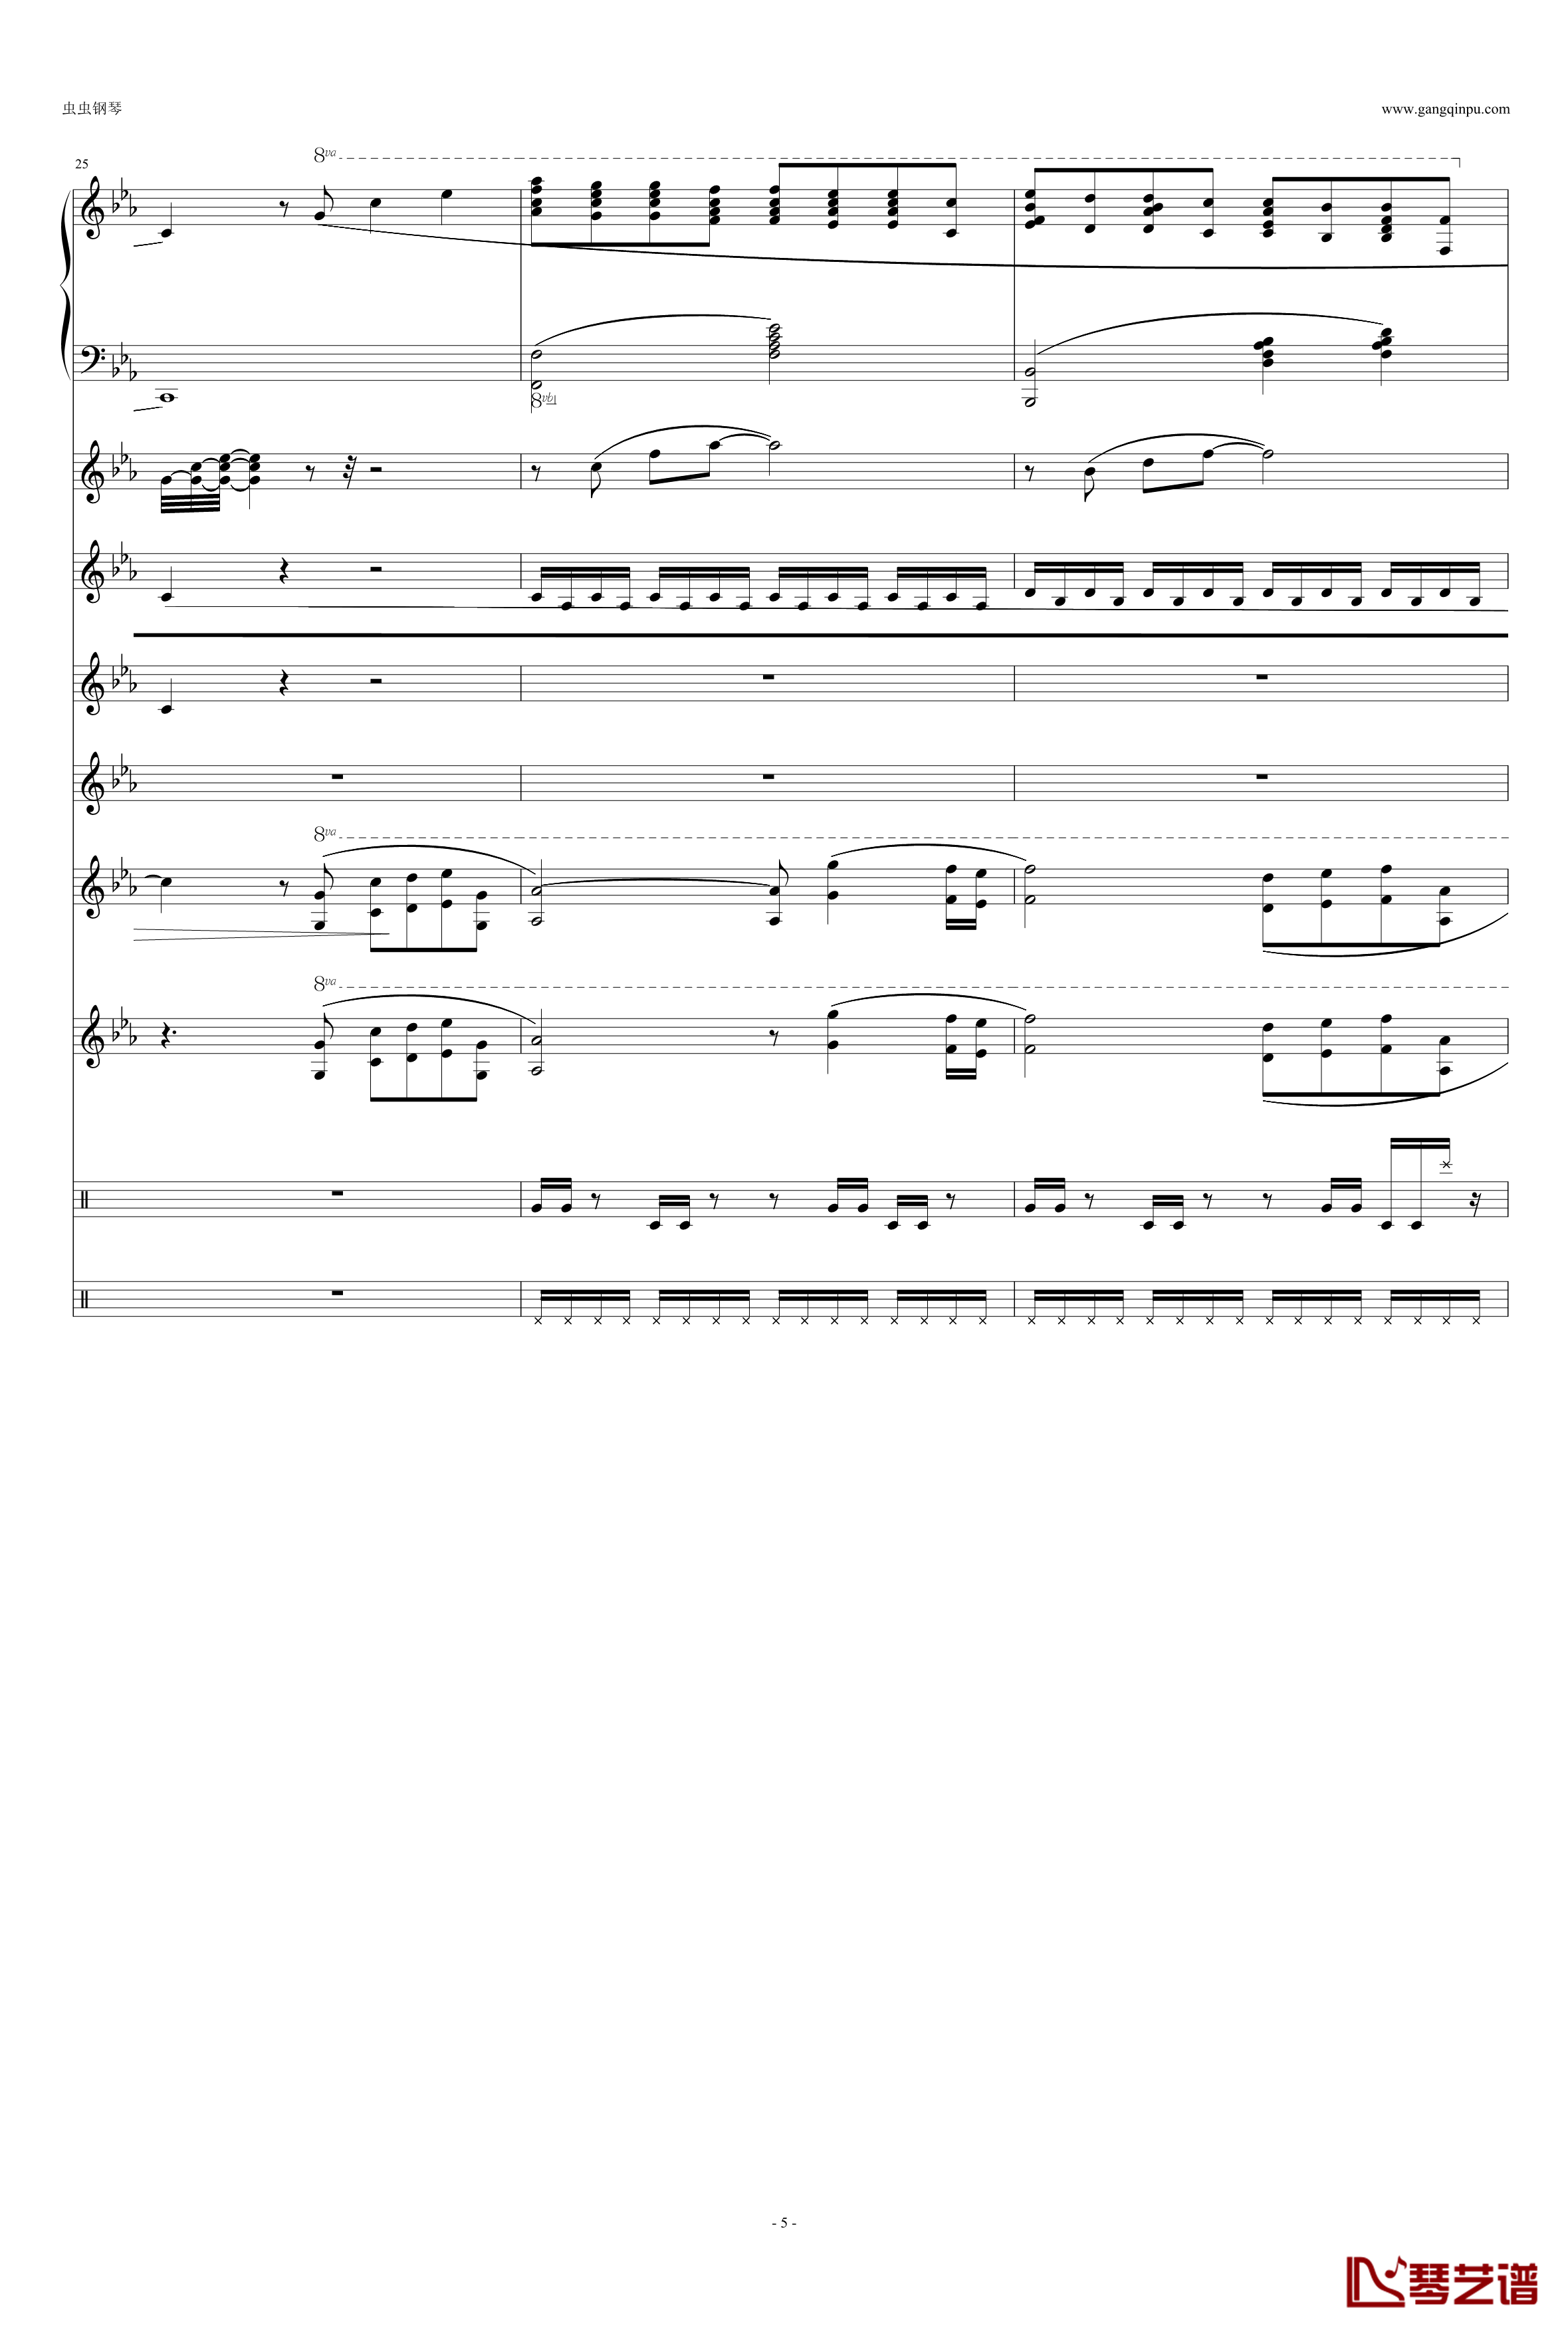 利鲁之歌钢琴谱-leeloos theme-马克西姆-Maksim·Mrvica5